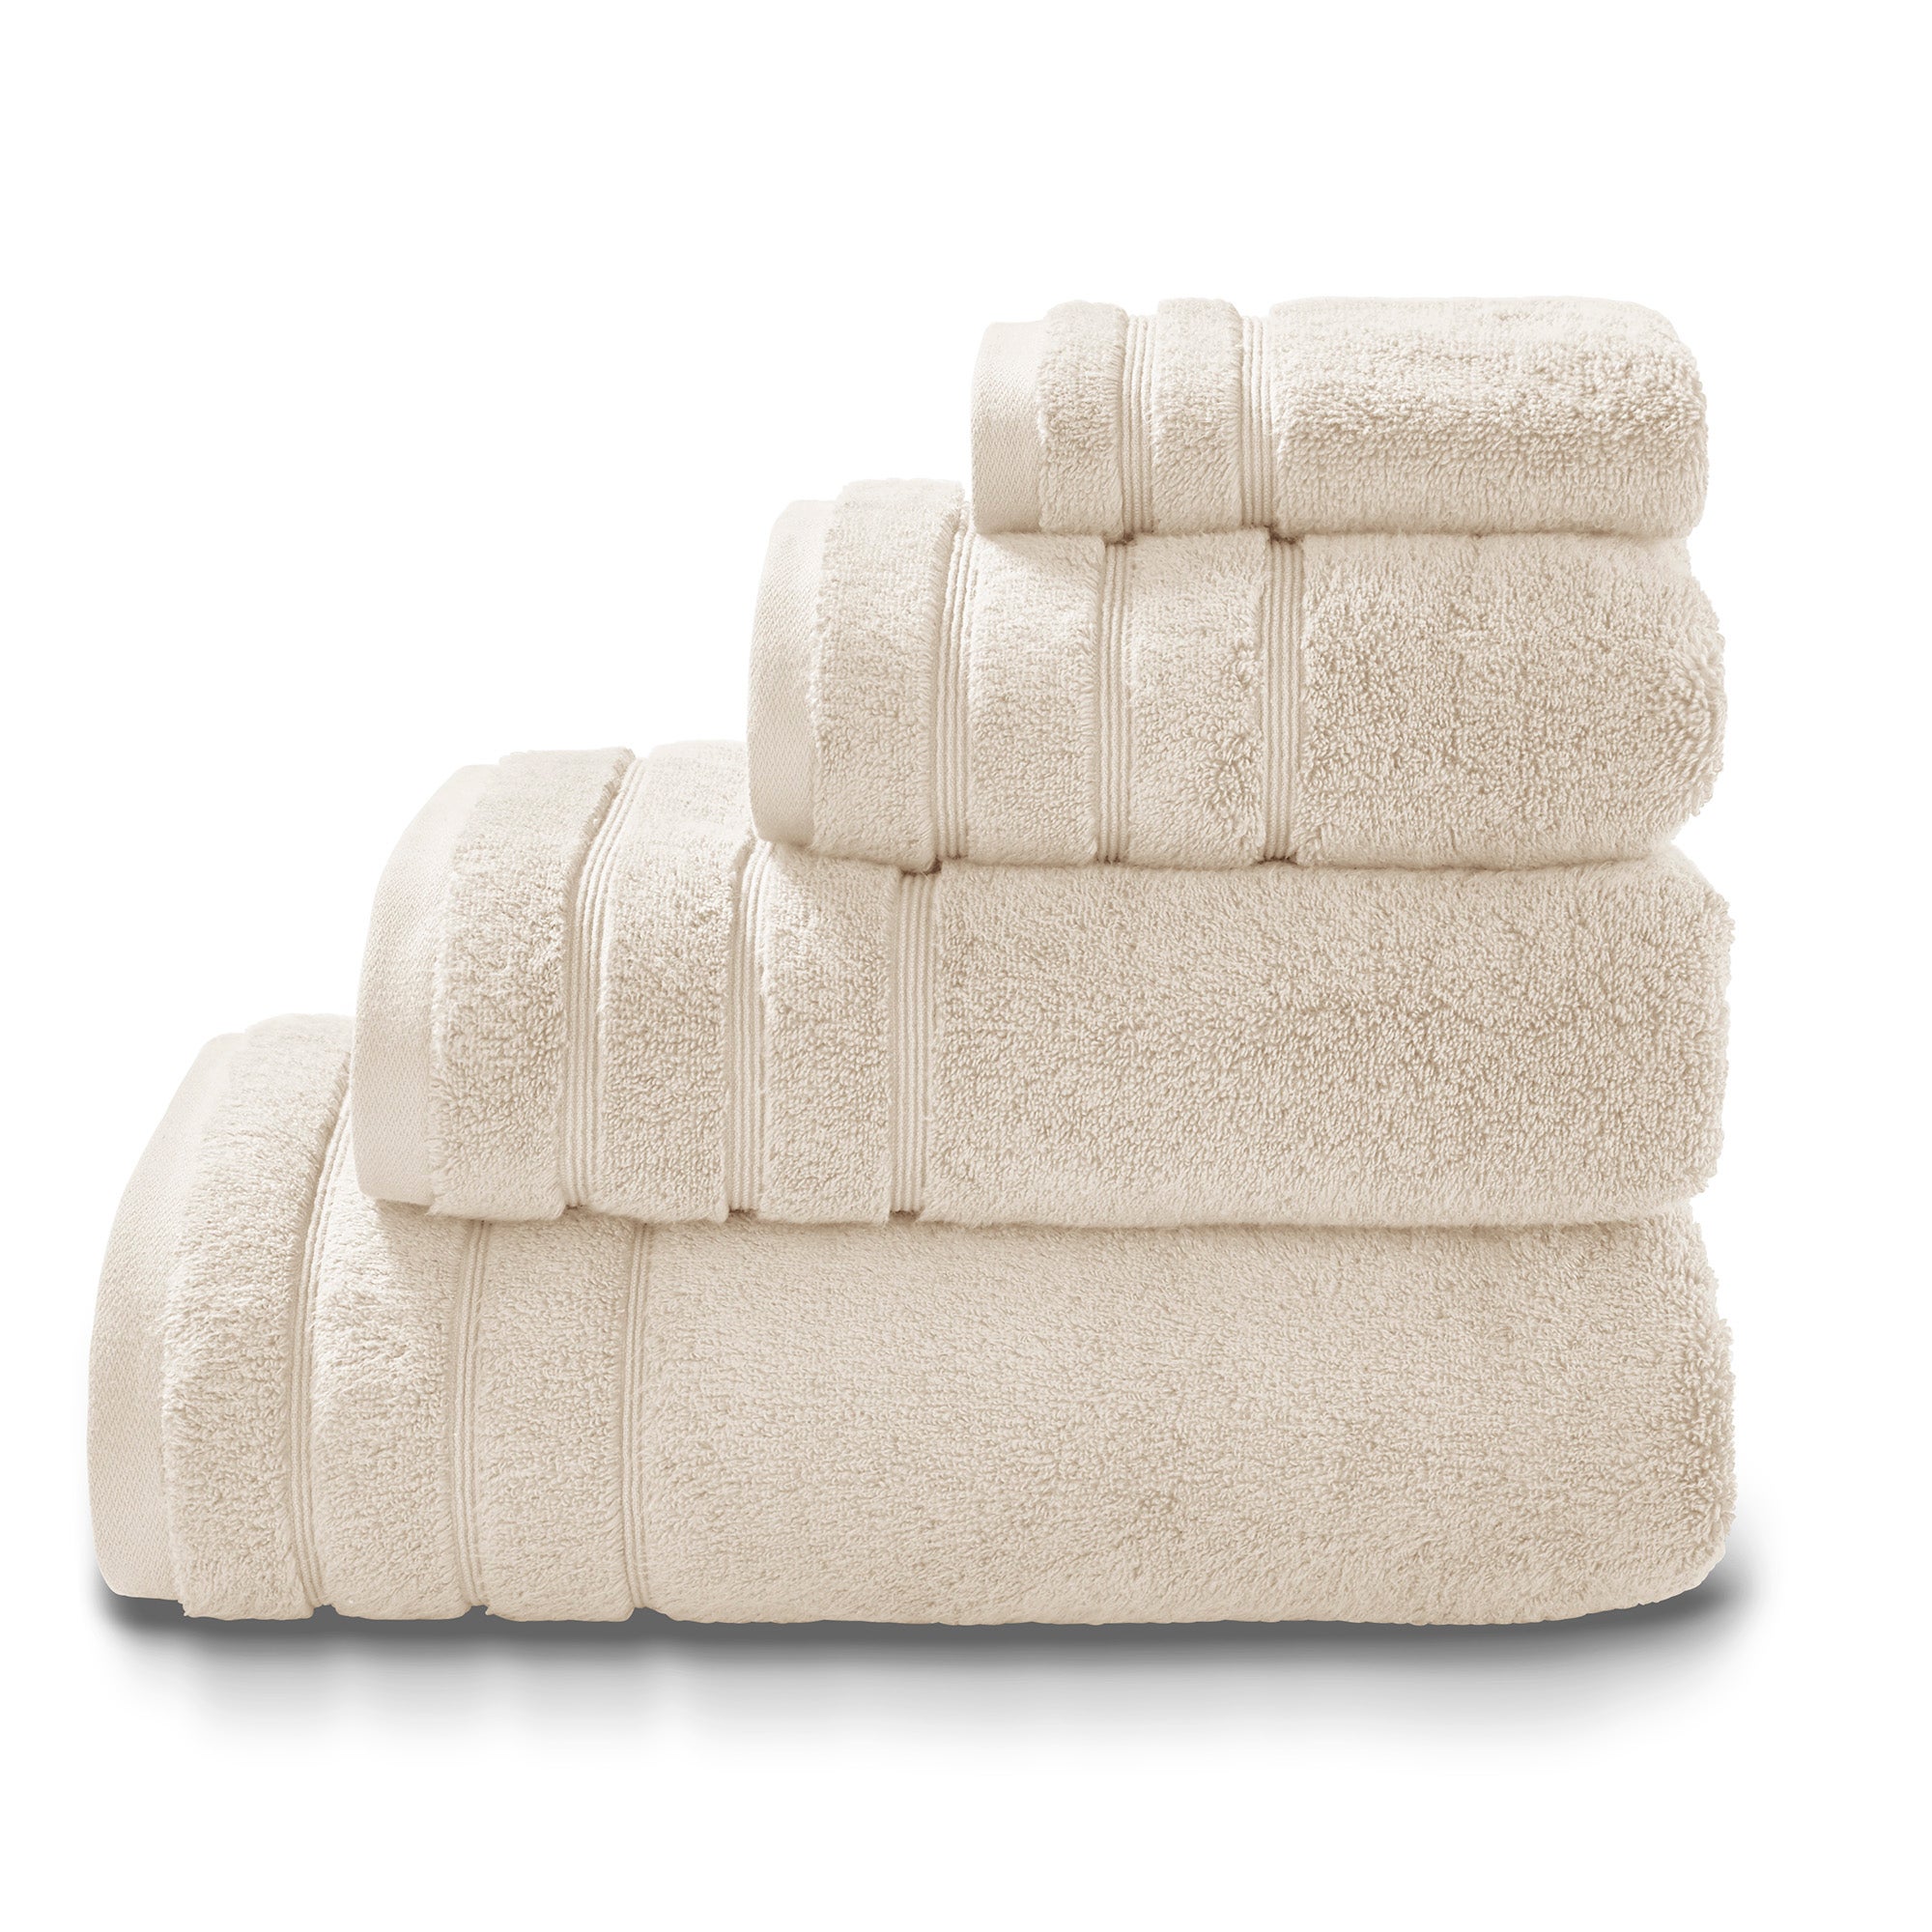 Towels | Bath Sheets & Egyptian Cotton Towels | Dunelm | Dunelm